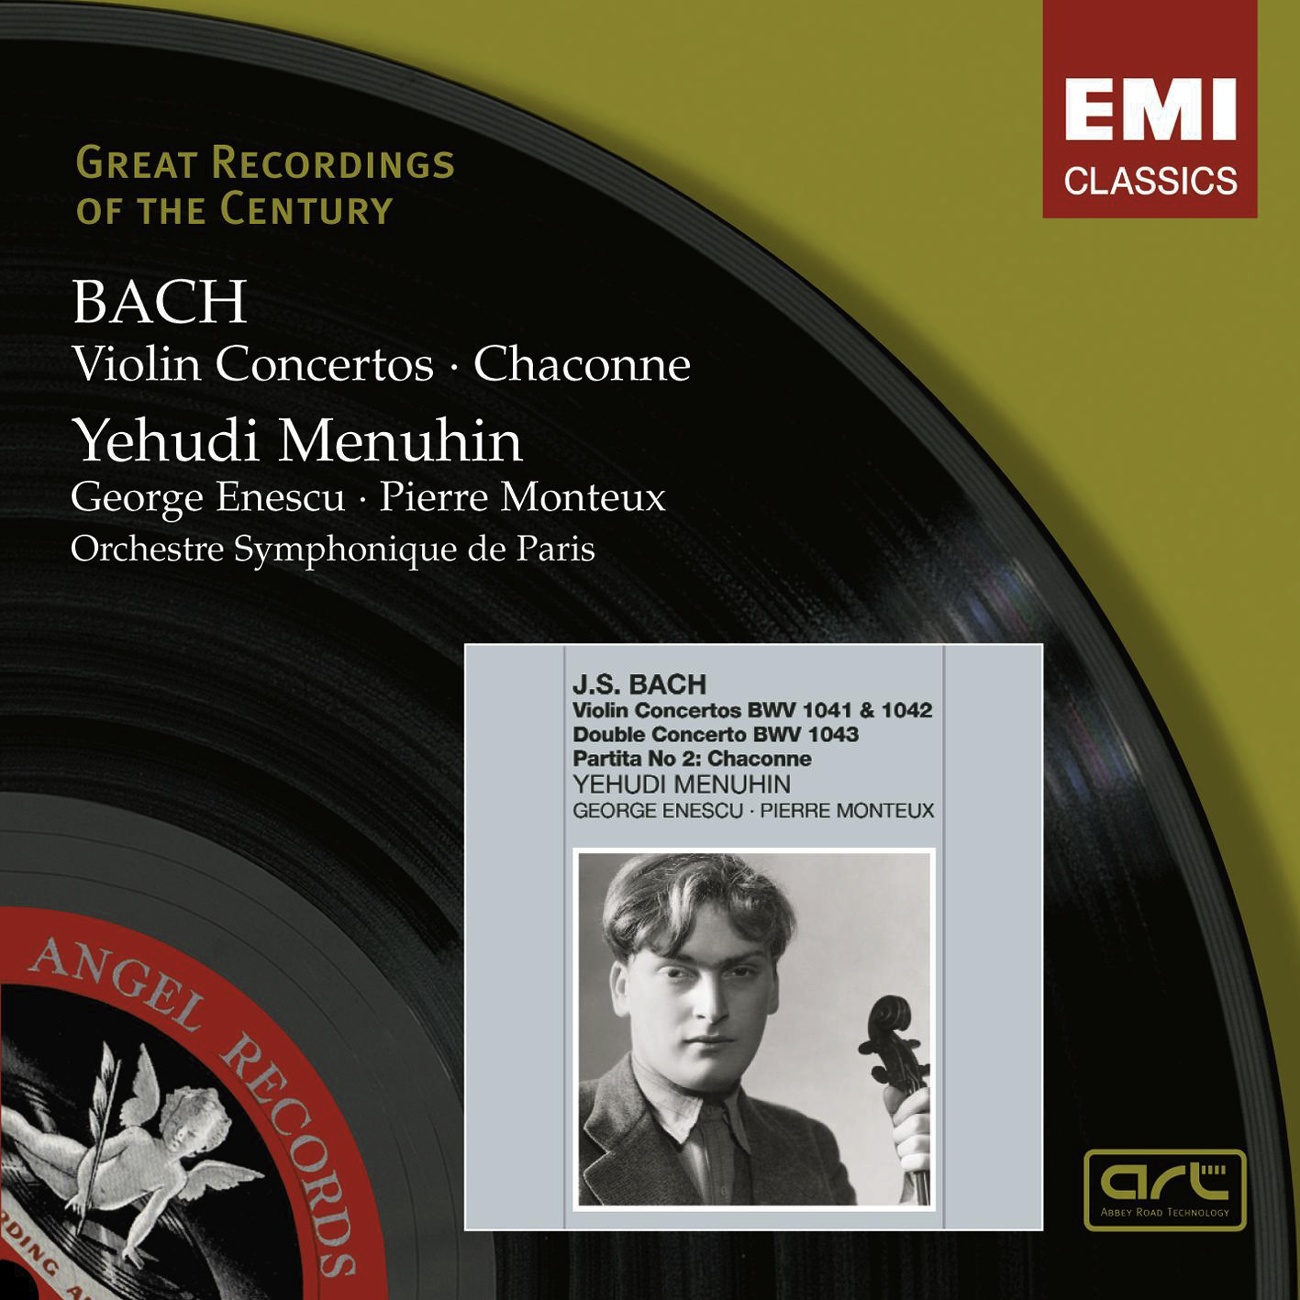 Violin Concerto in E, BWV 1042 (2007 Remastered Version): I. Allegro